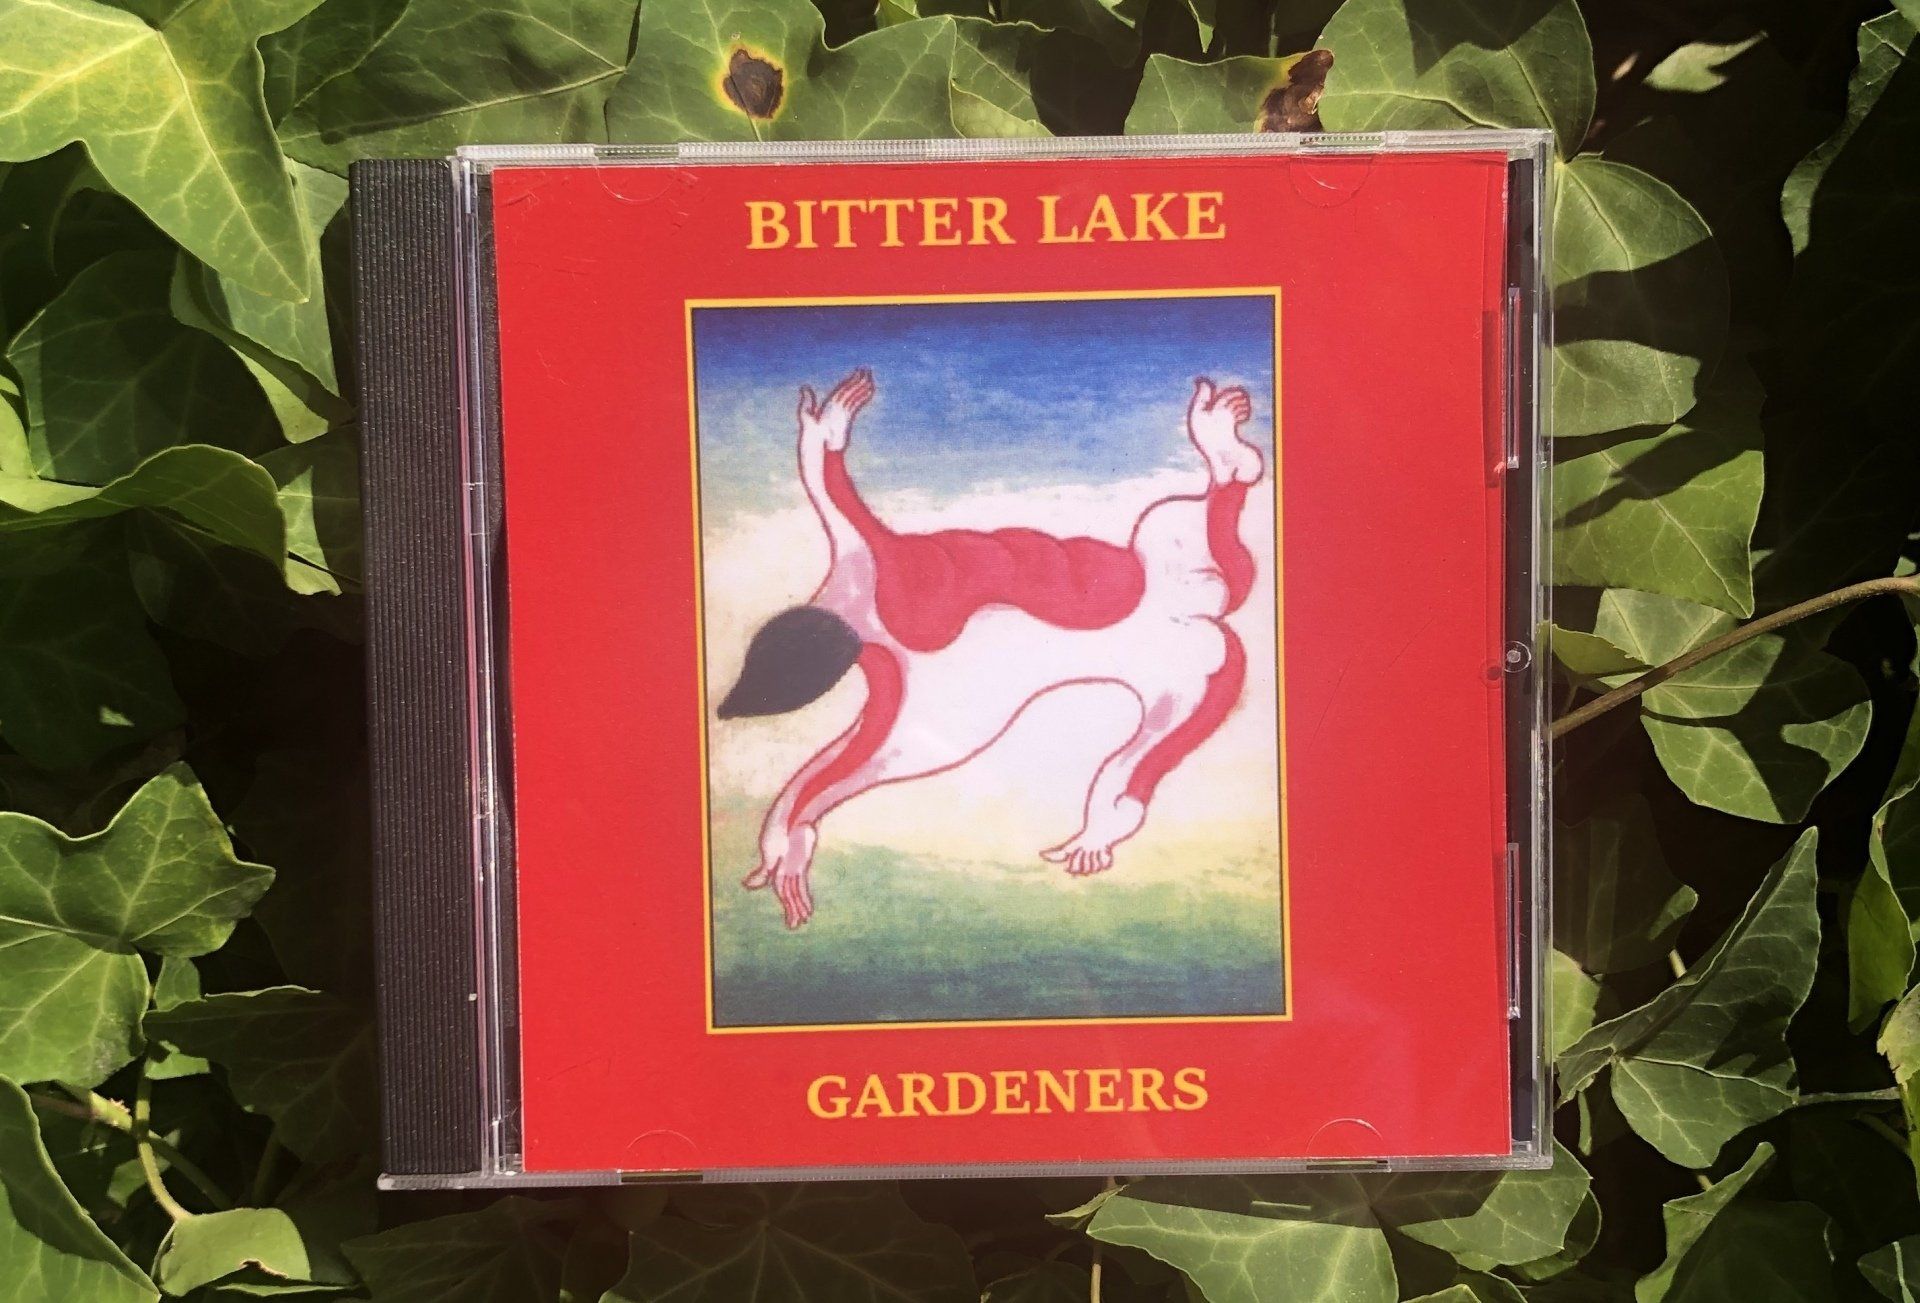 Bitter Lake - Gardeners on CD - $5